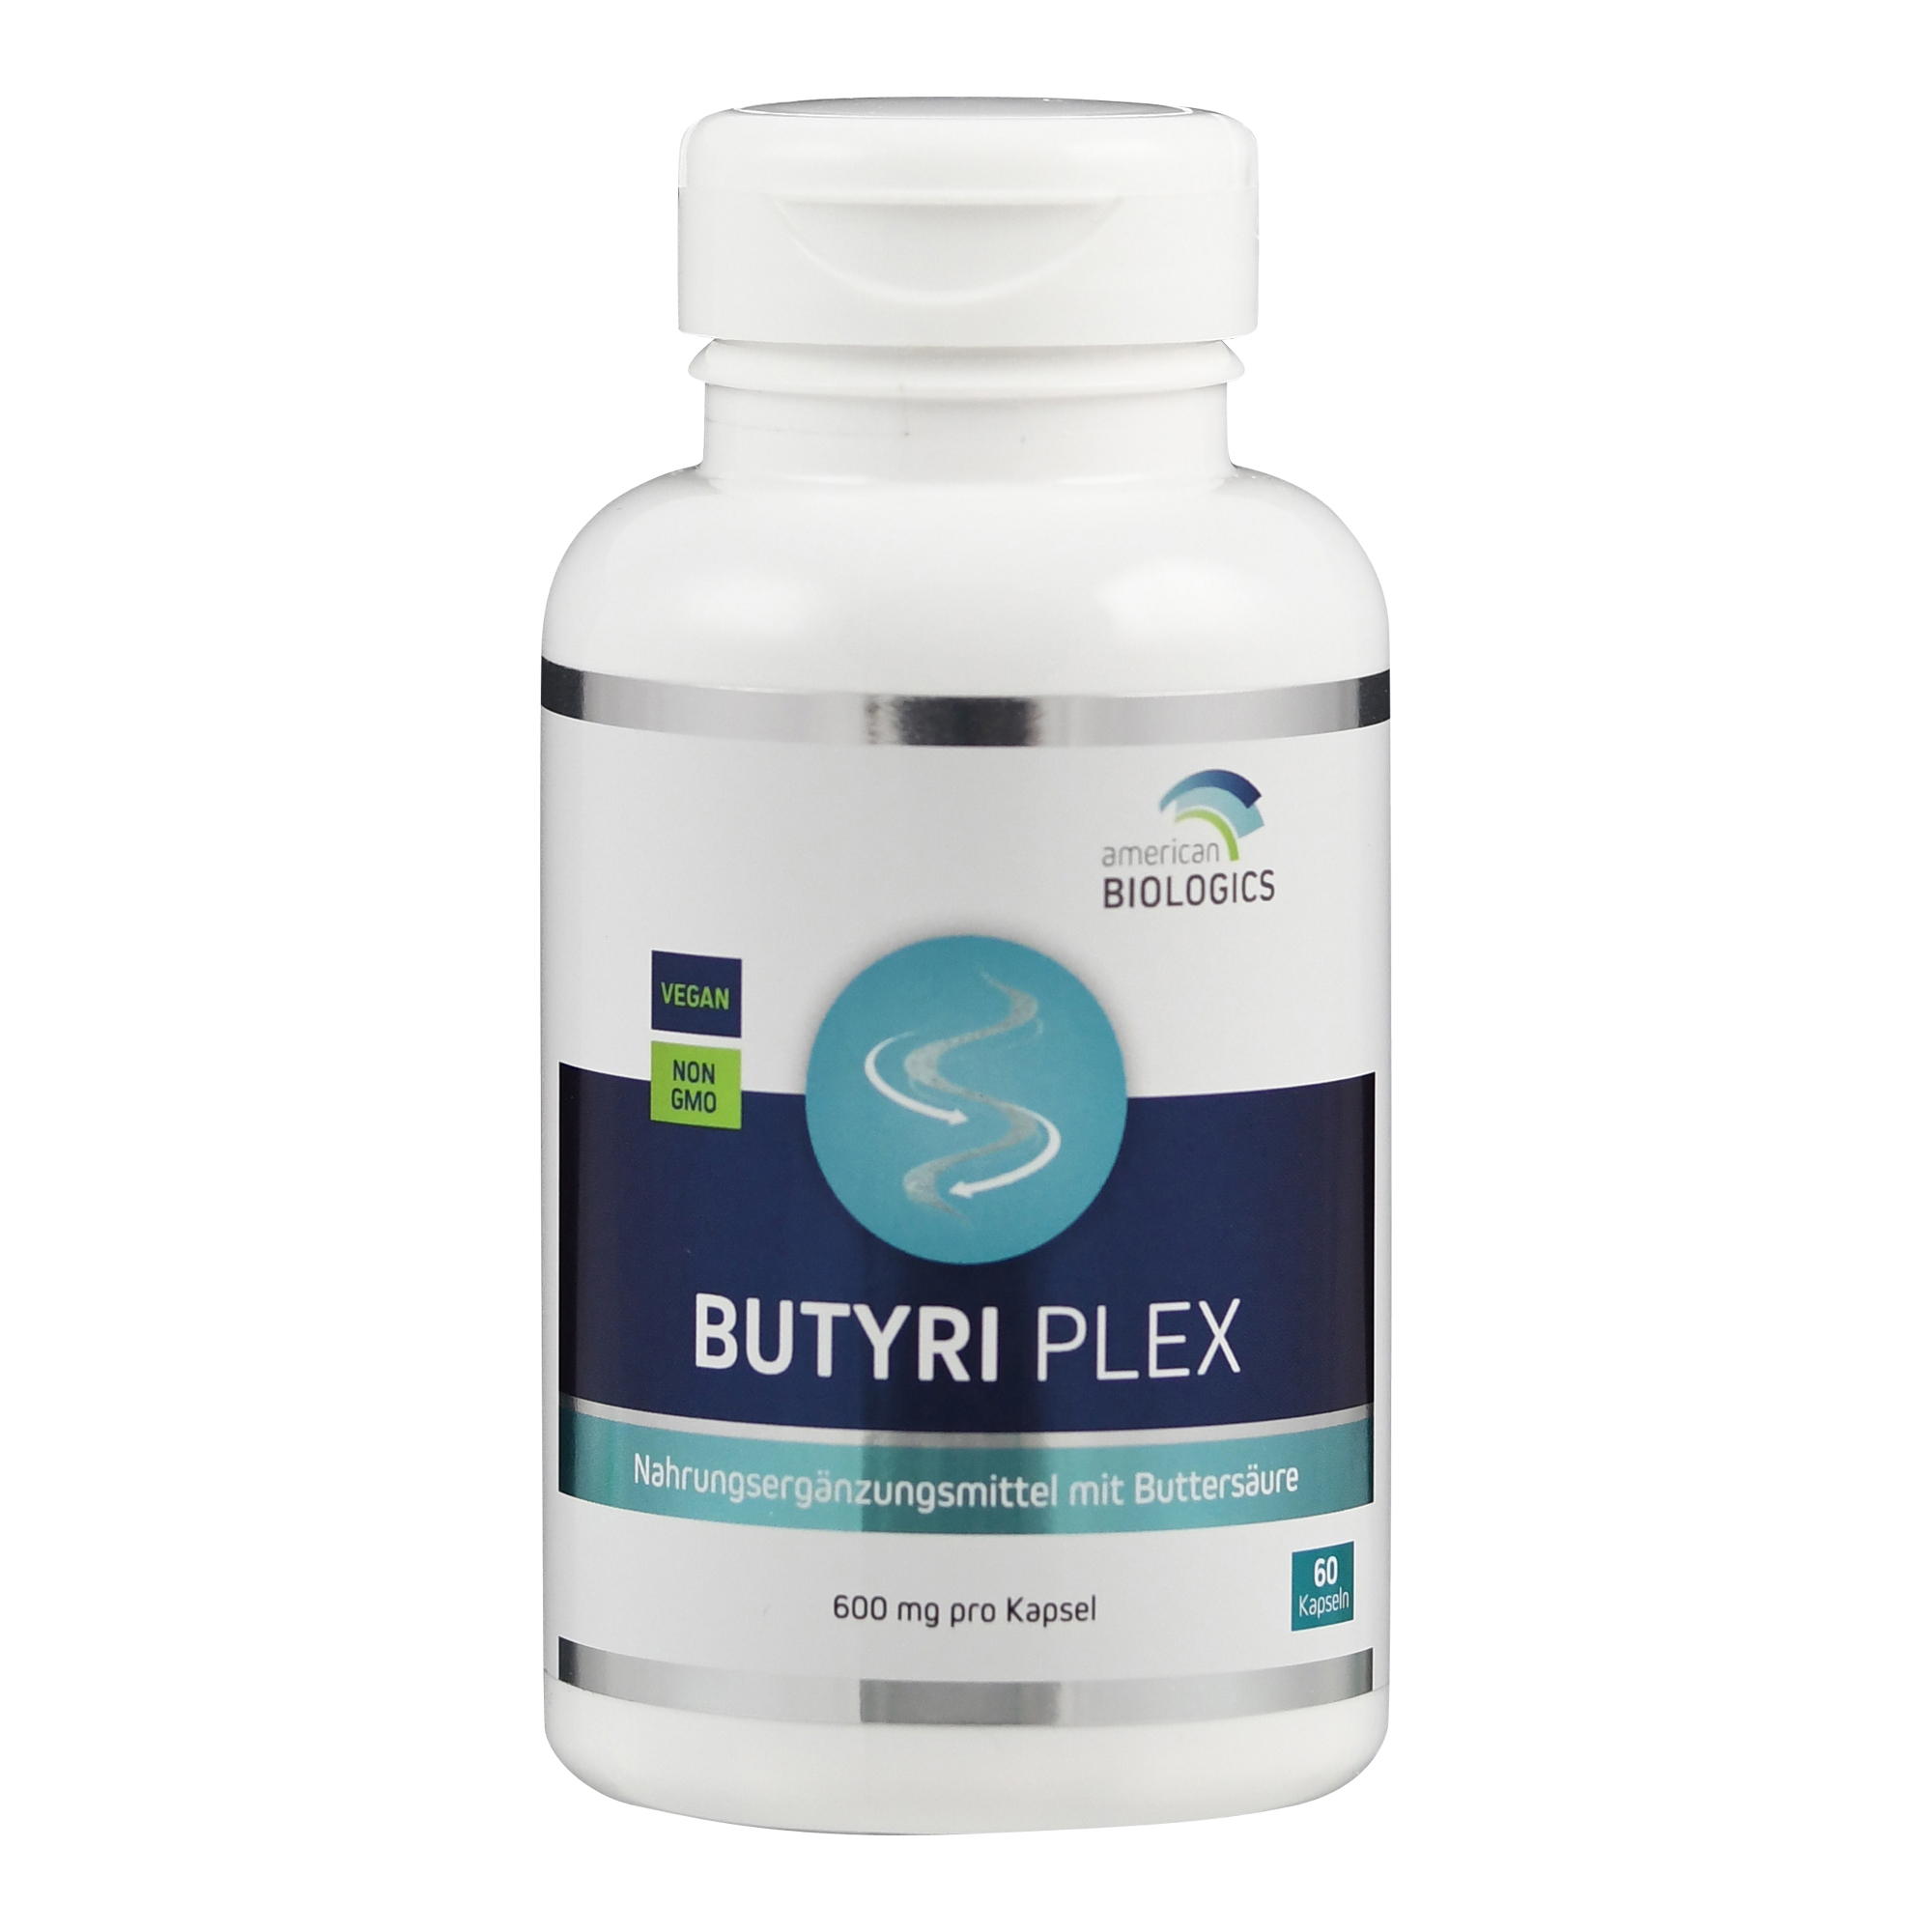 Butyri Plex (mit 600 mg Buttersäure) von American Biologics.